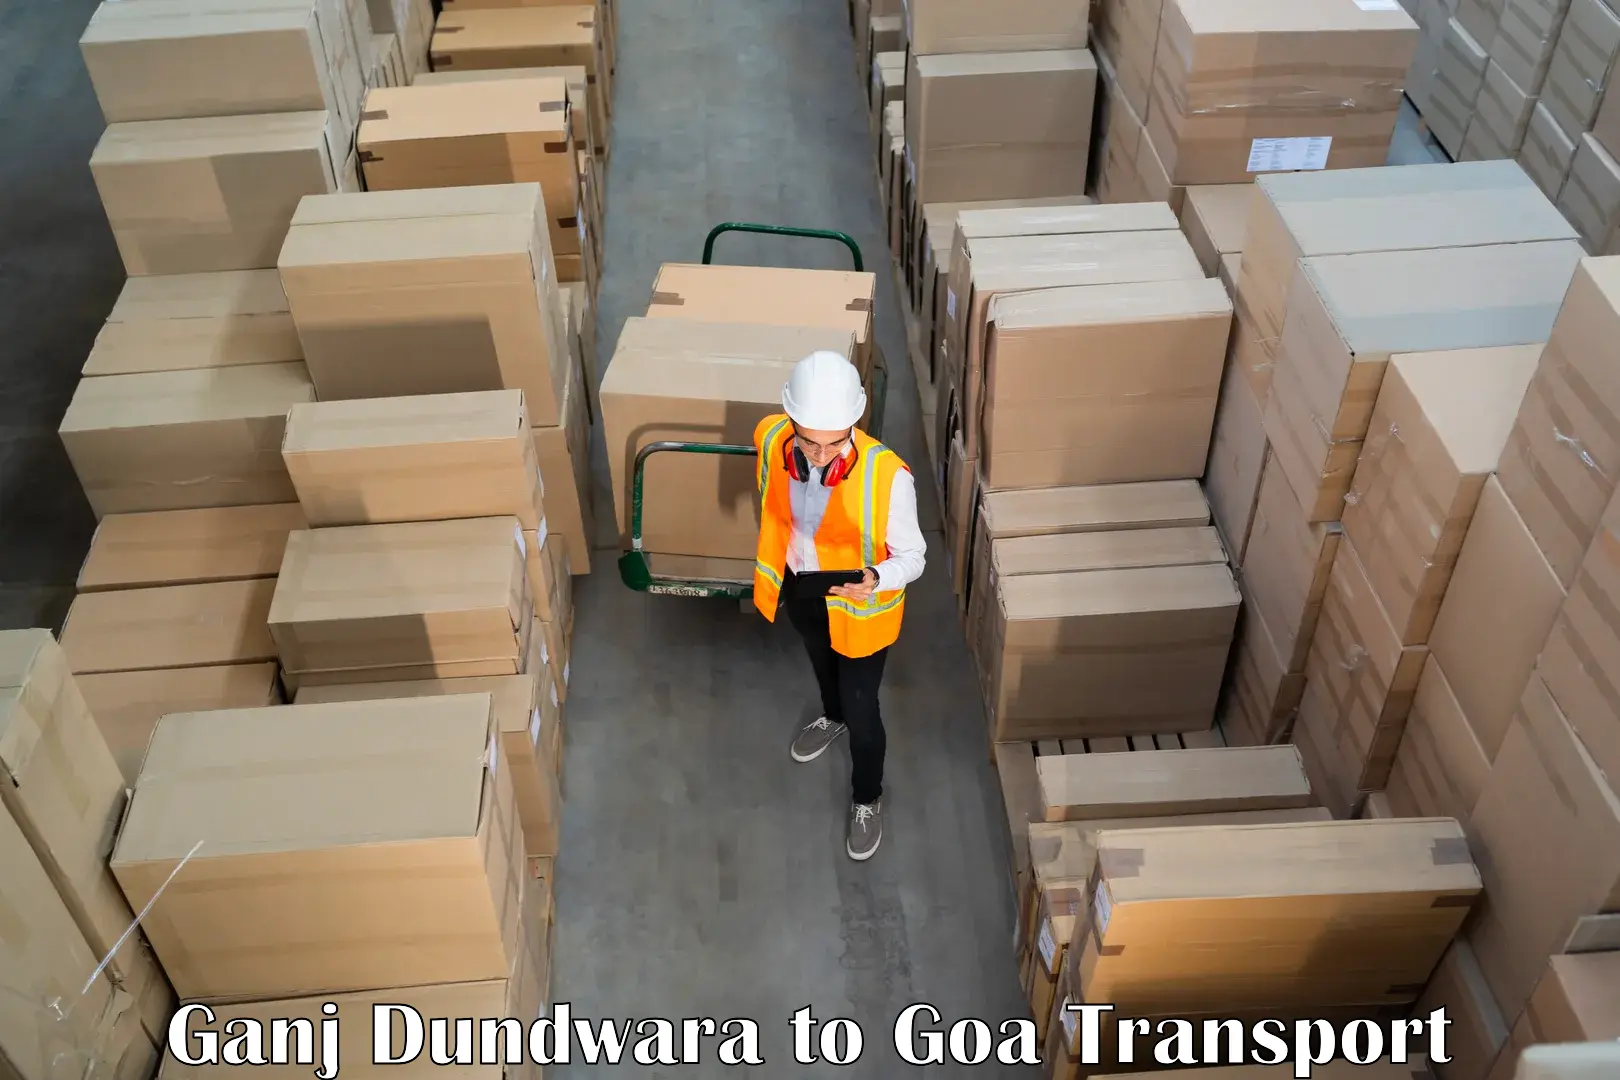 Interstate transport services Ganj Dundwara to Bicholim